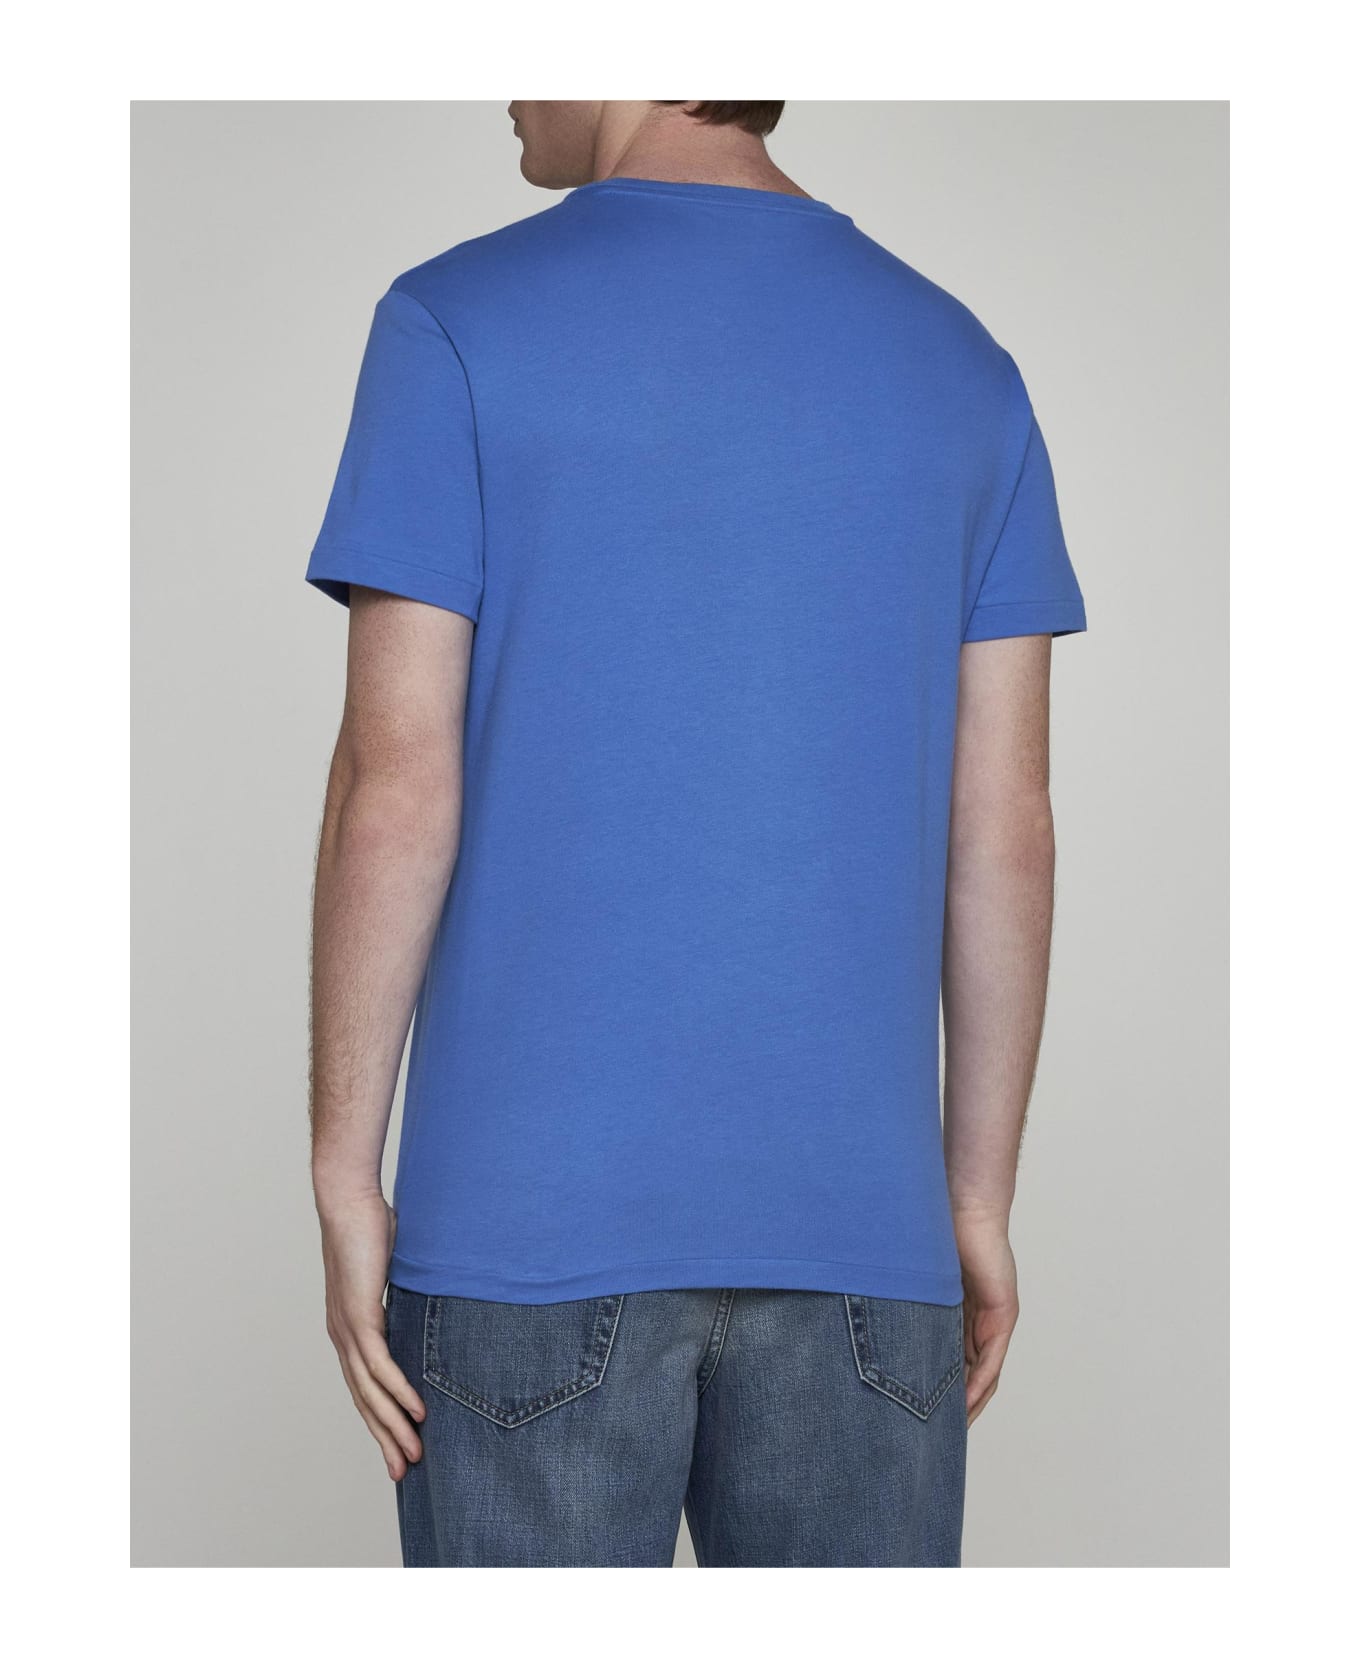 Ralph Lauren Logo Cotton T-shirt - New England Blue